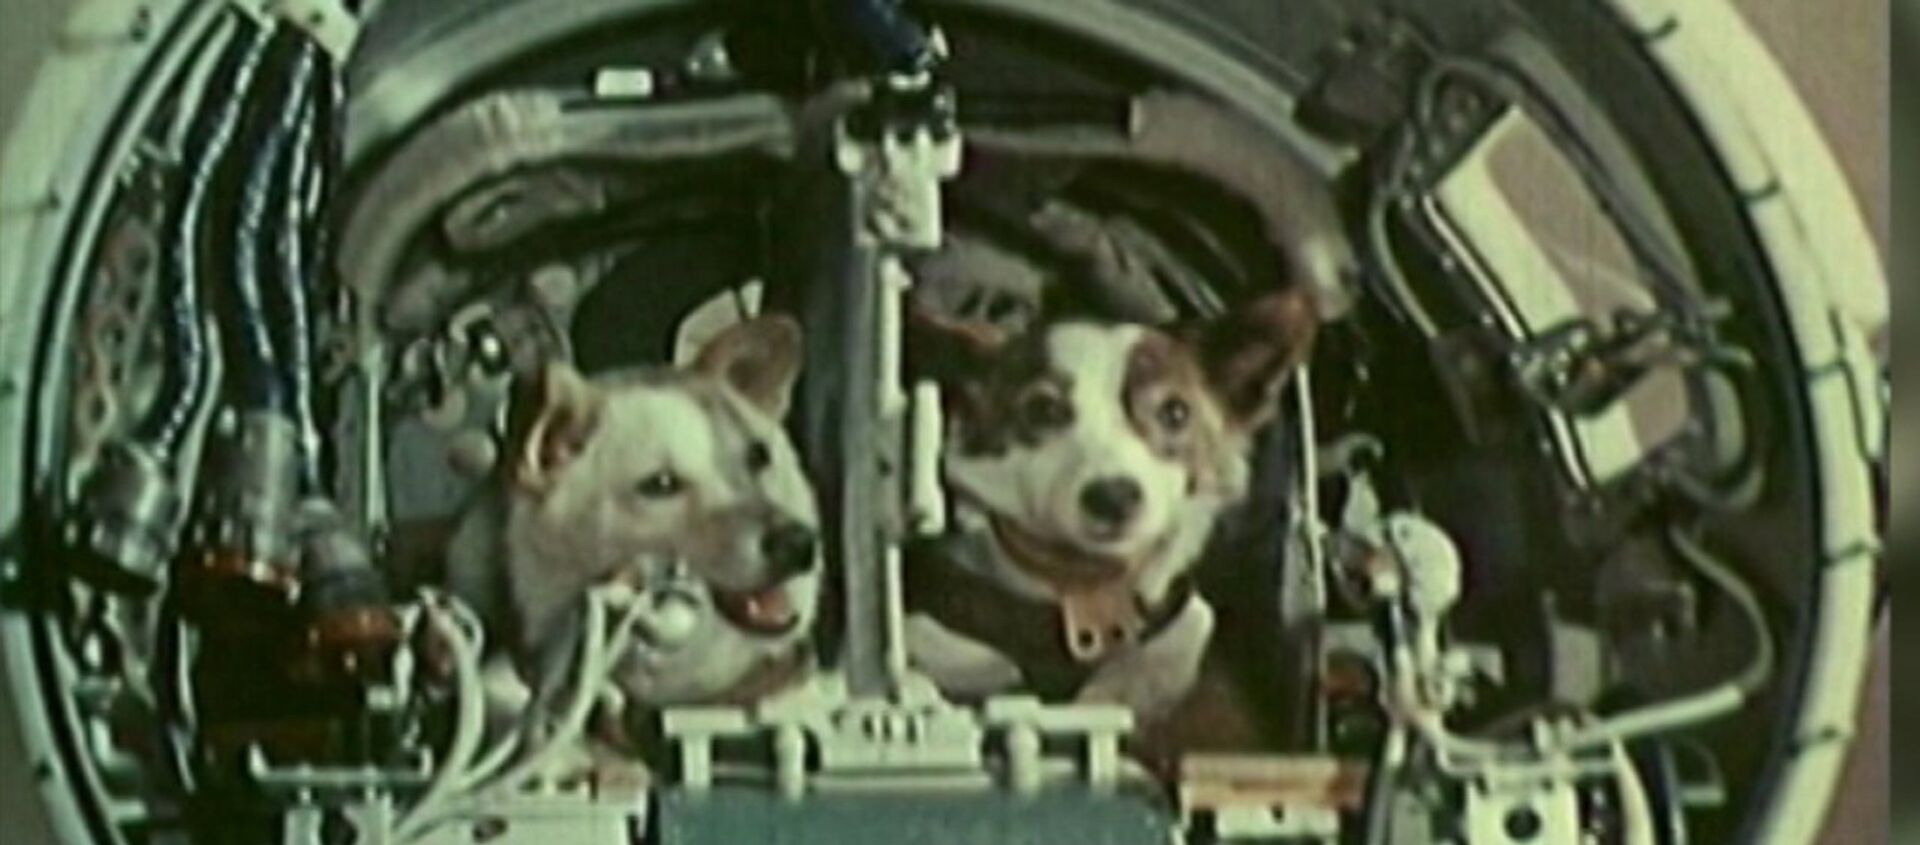 Belka y Strelka, las perritas que conquistaron el espacio hace 58 años - Sputnik Mundo, 1920, 19.08.2018